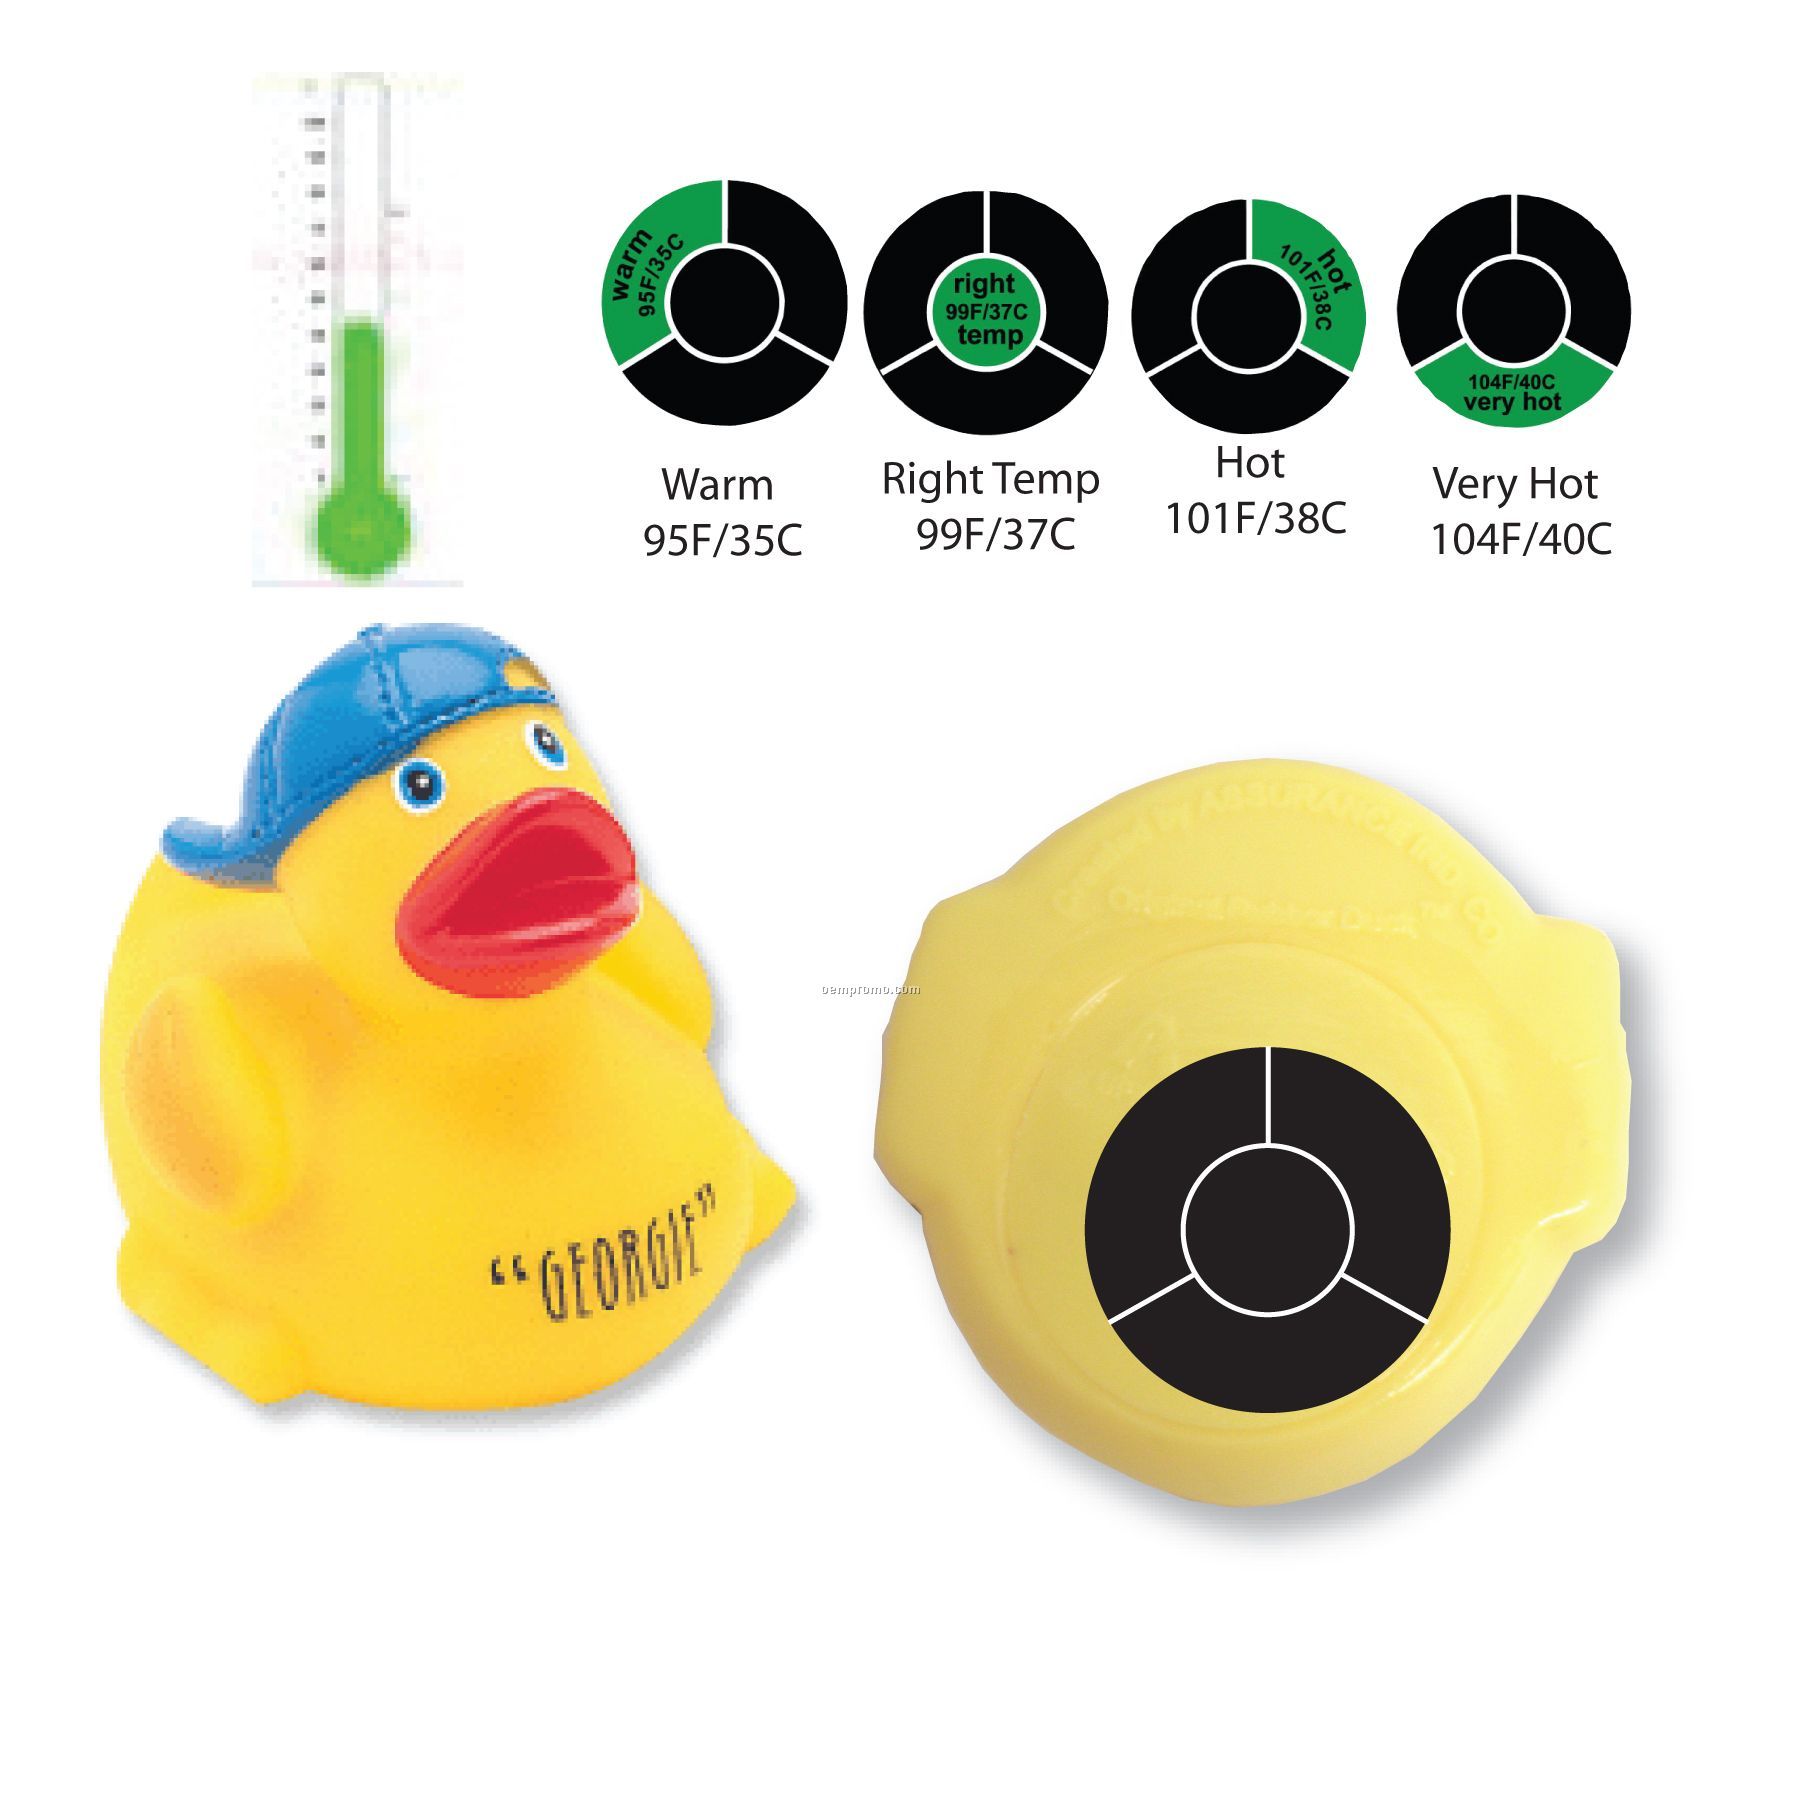 Temperature Duck Toy